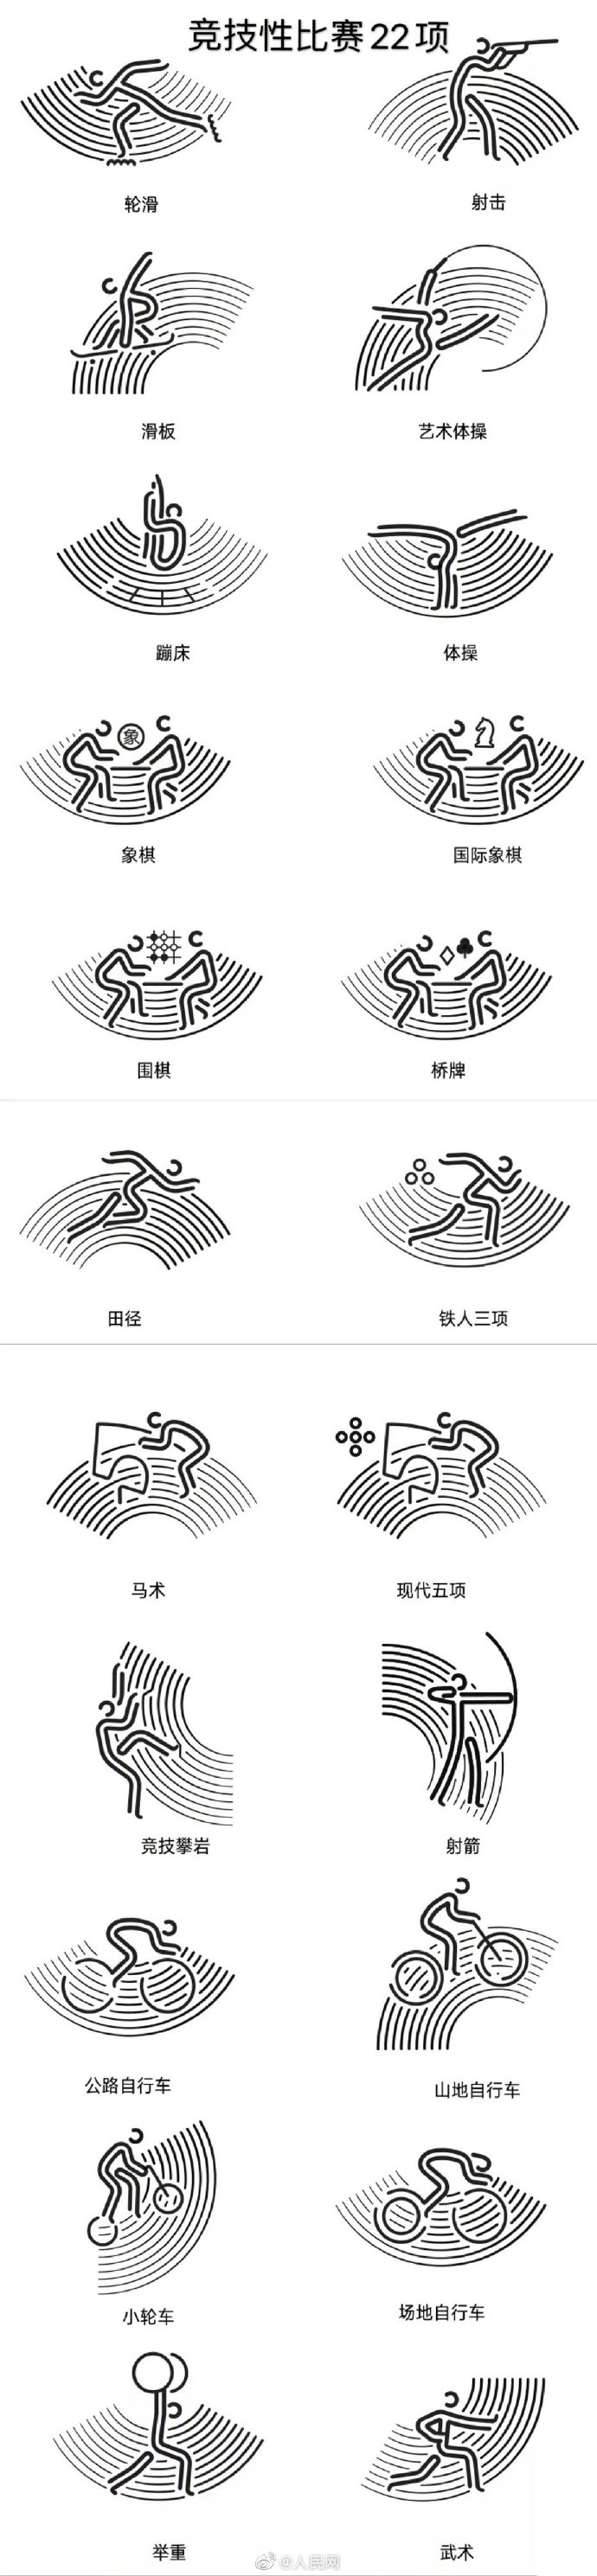 杭州亚运会体育图标发布